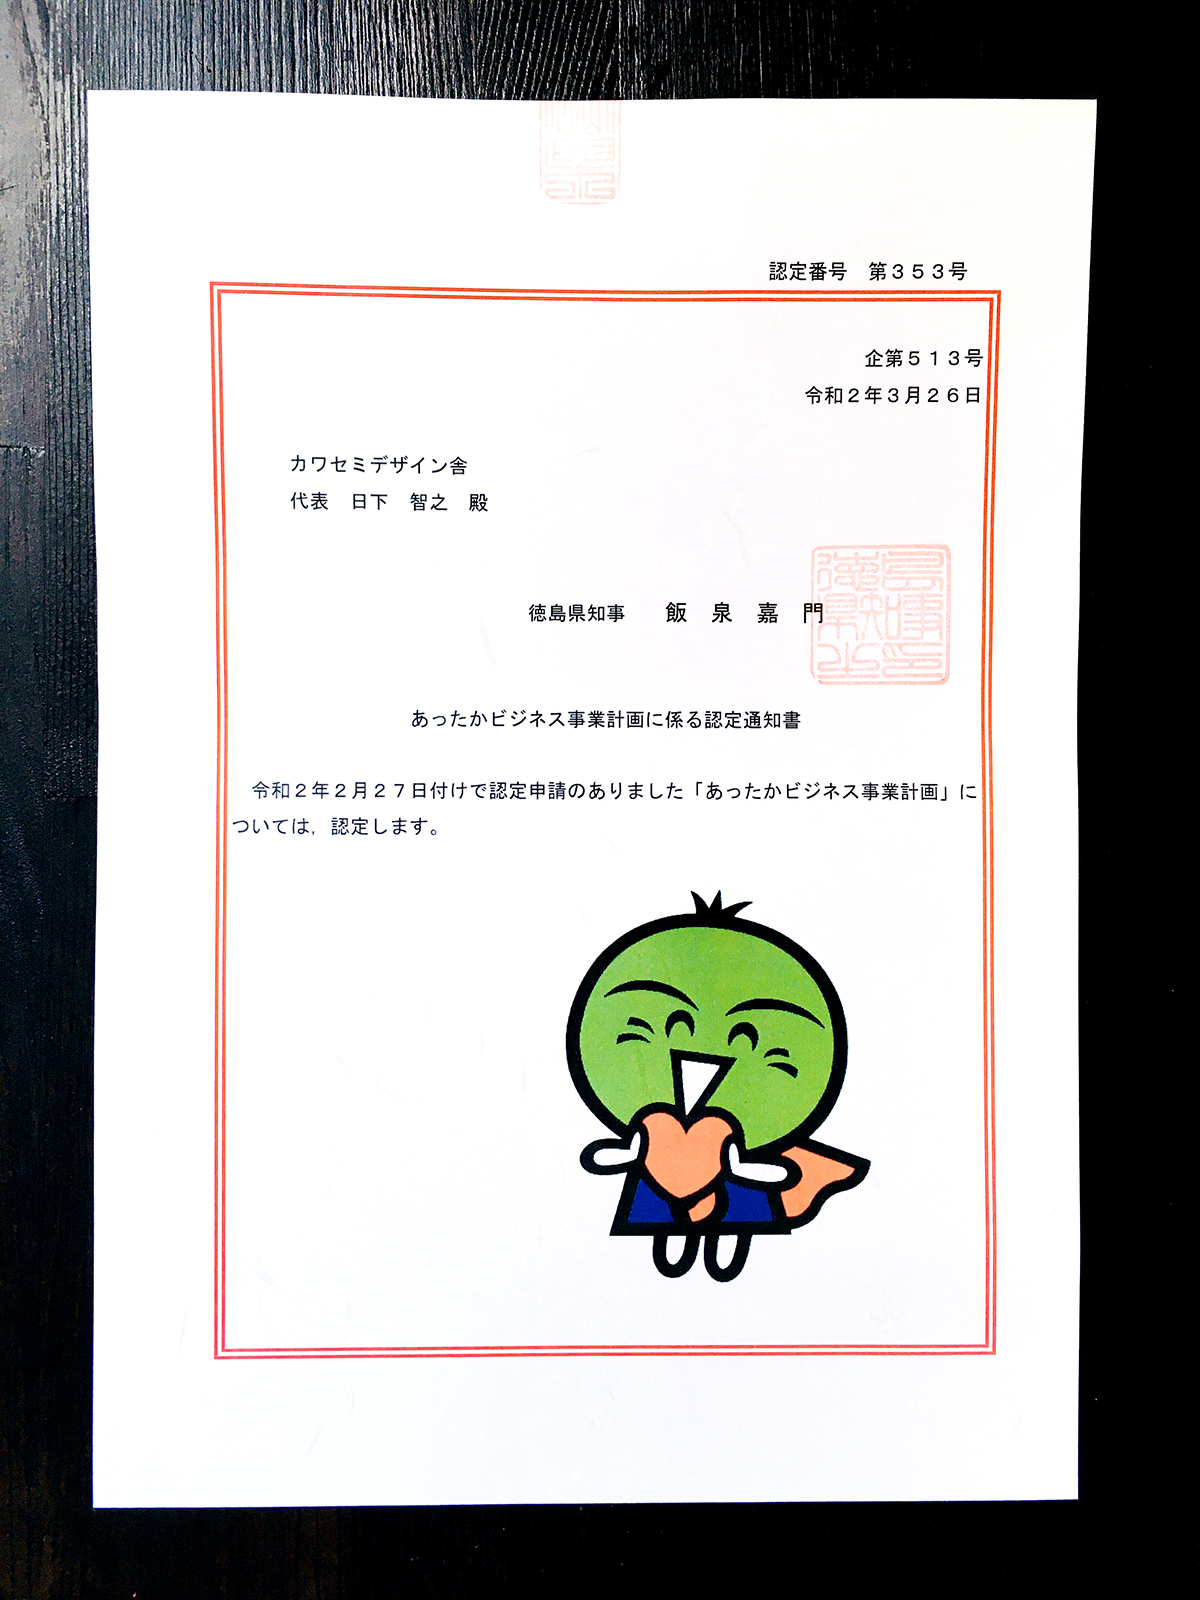 徳島県「あったかビジネス事業計画」に認定されました！ | カワセミデザイン舎